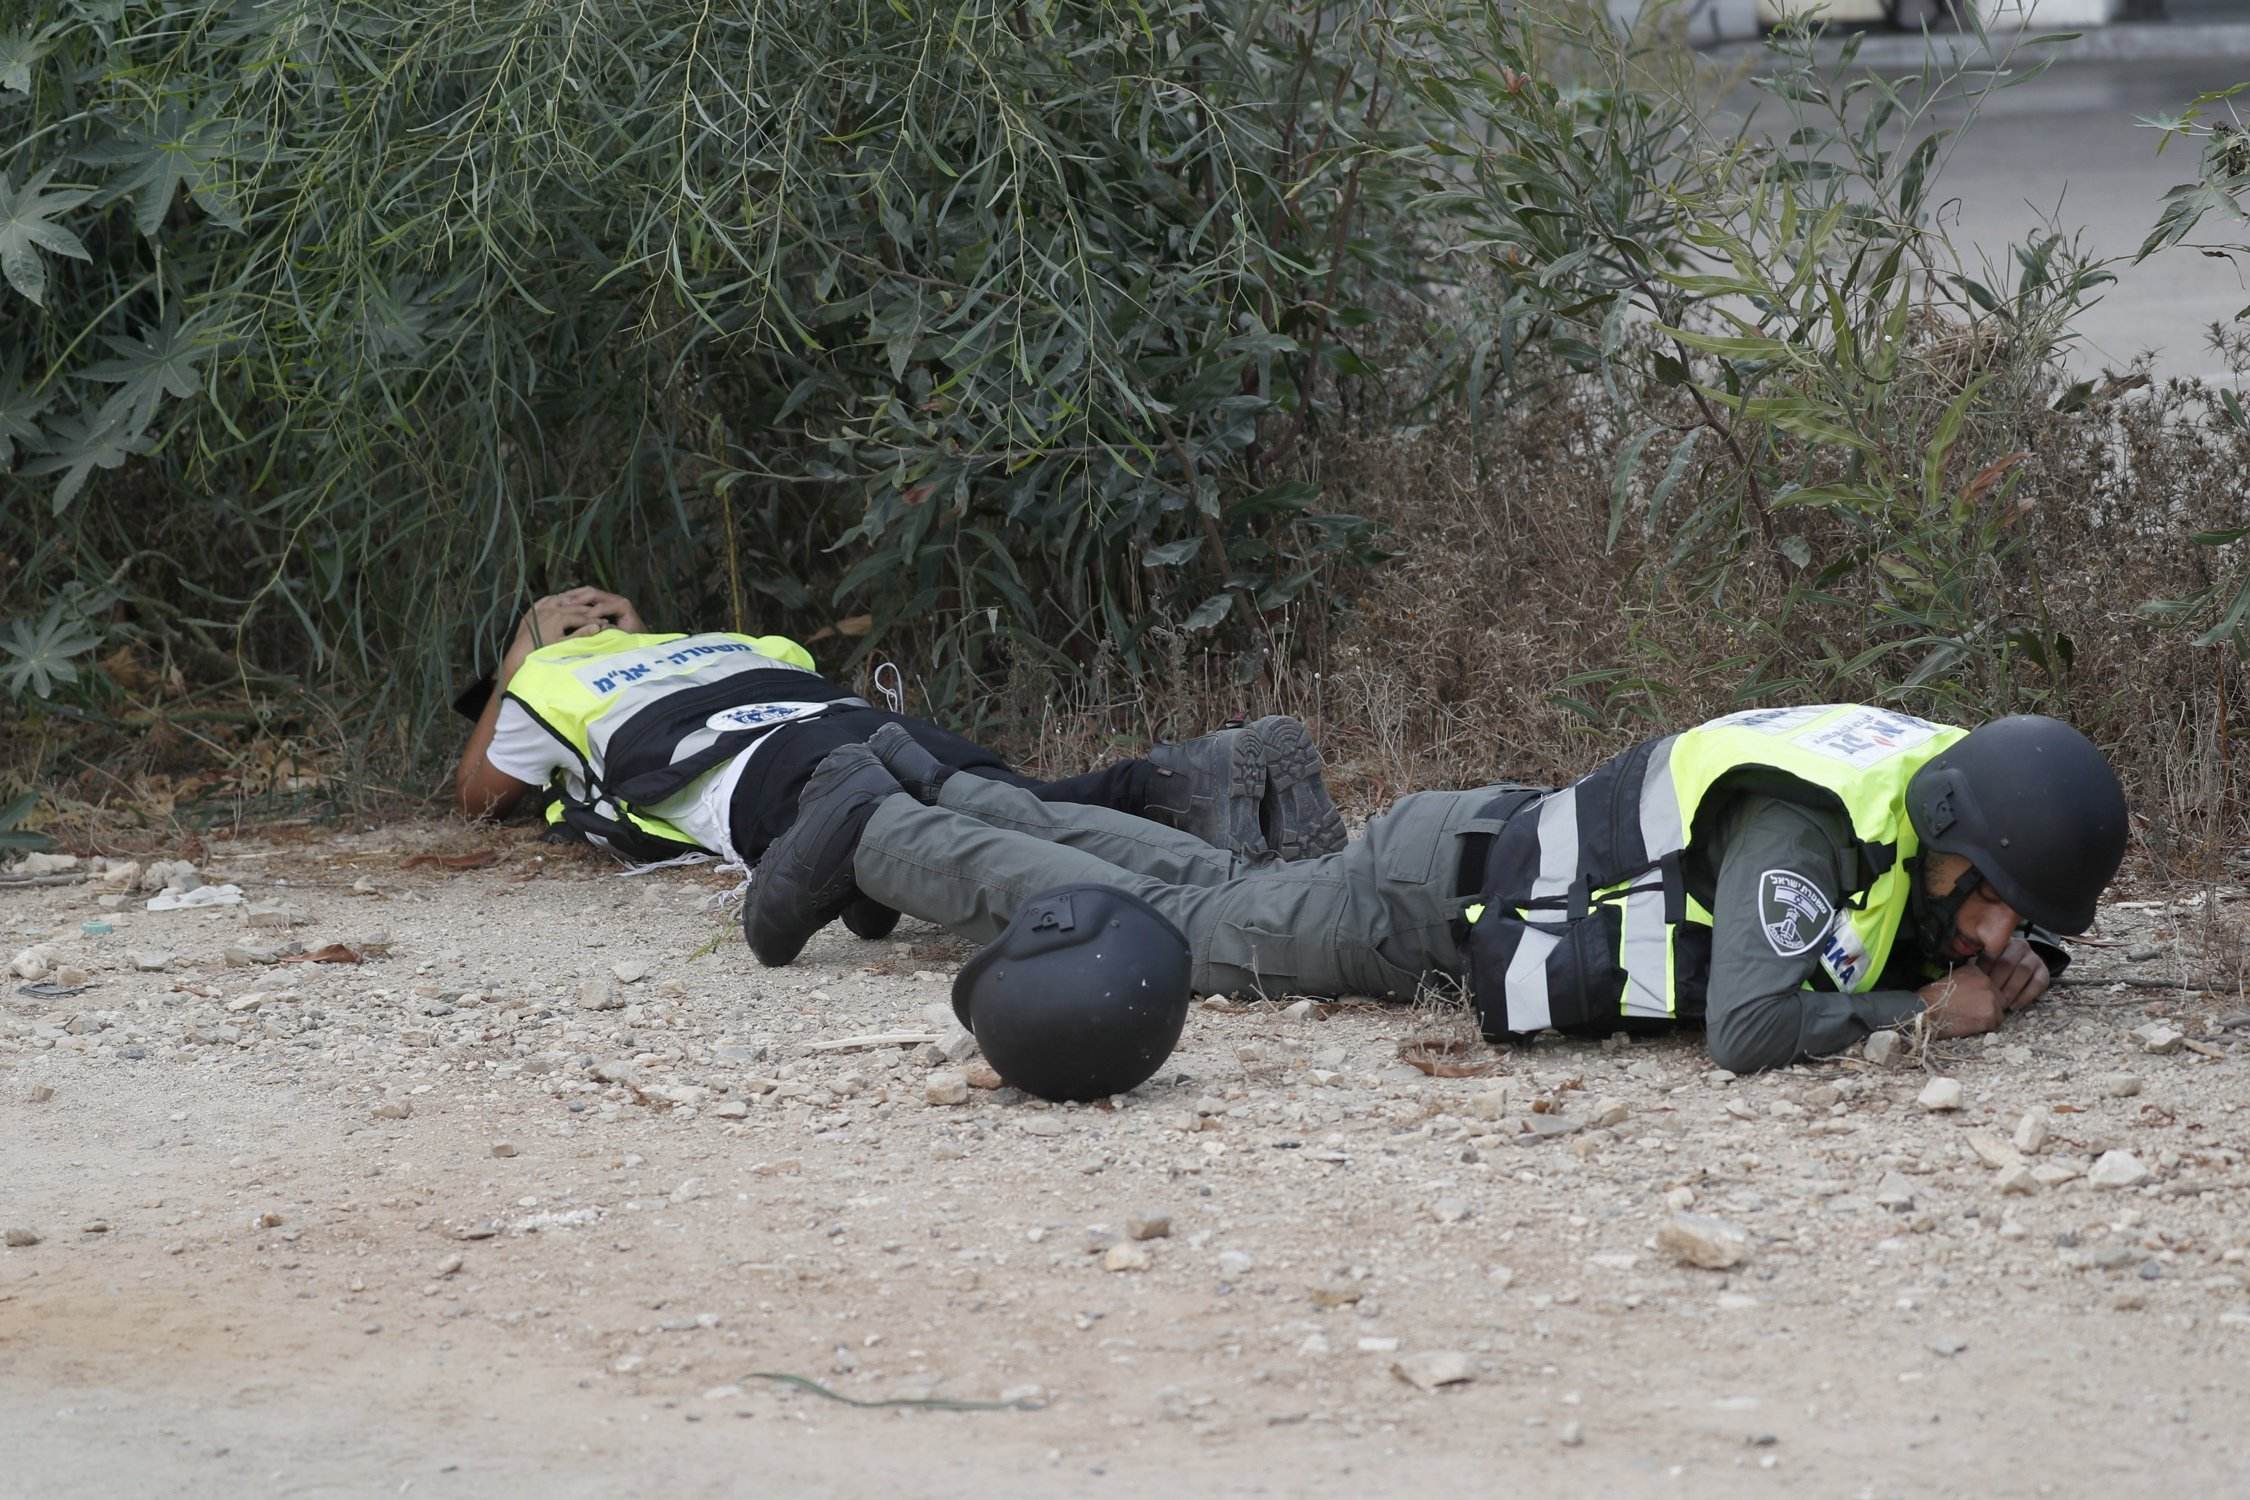 Els vídeos colpidors de l'assalt de Hamàs a la base de Nahal Oz, on hi havia la Maya, la jove espanyola